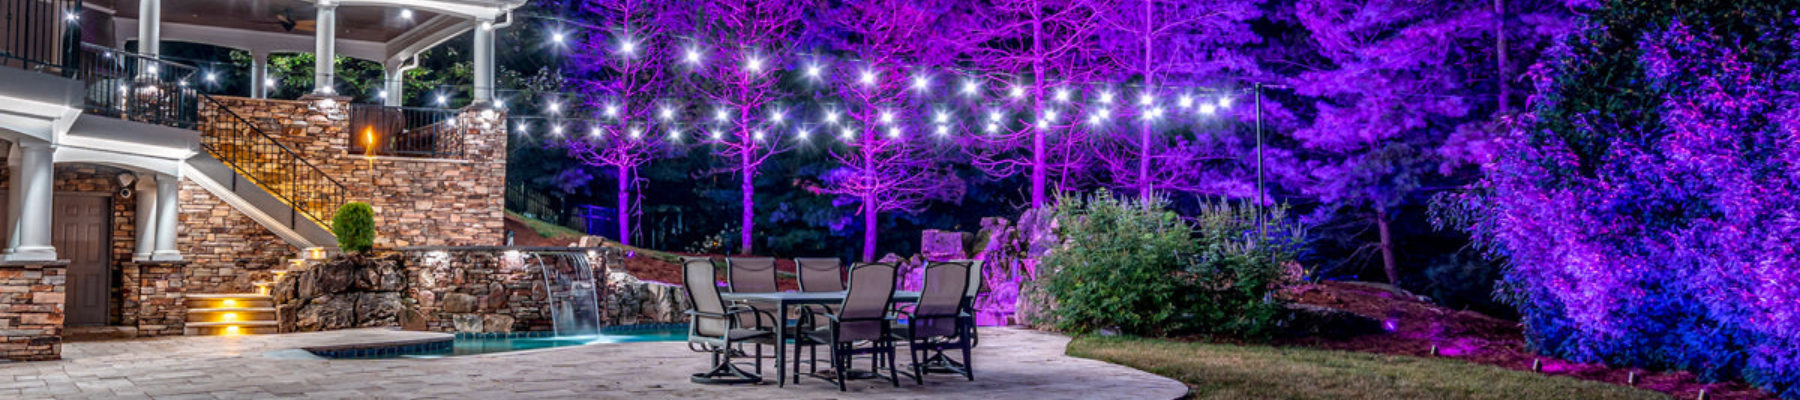 bistro and backyard full color landscape lights